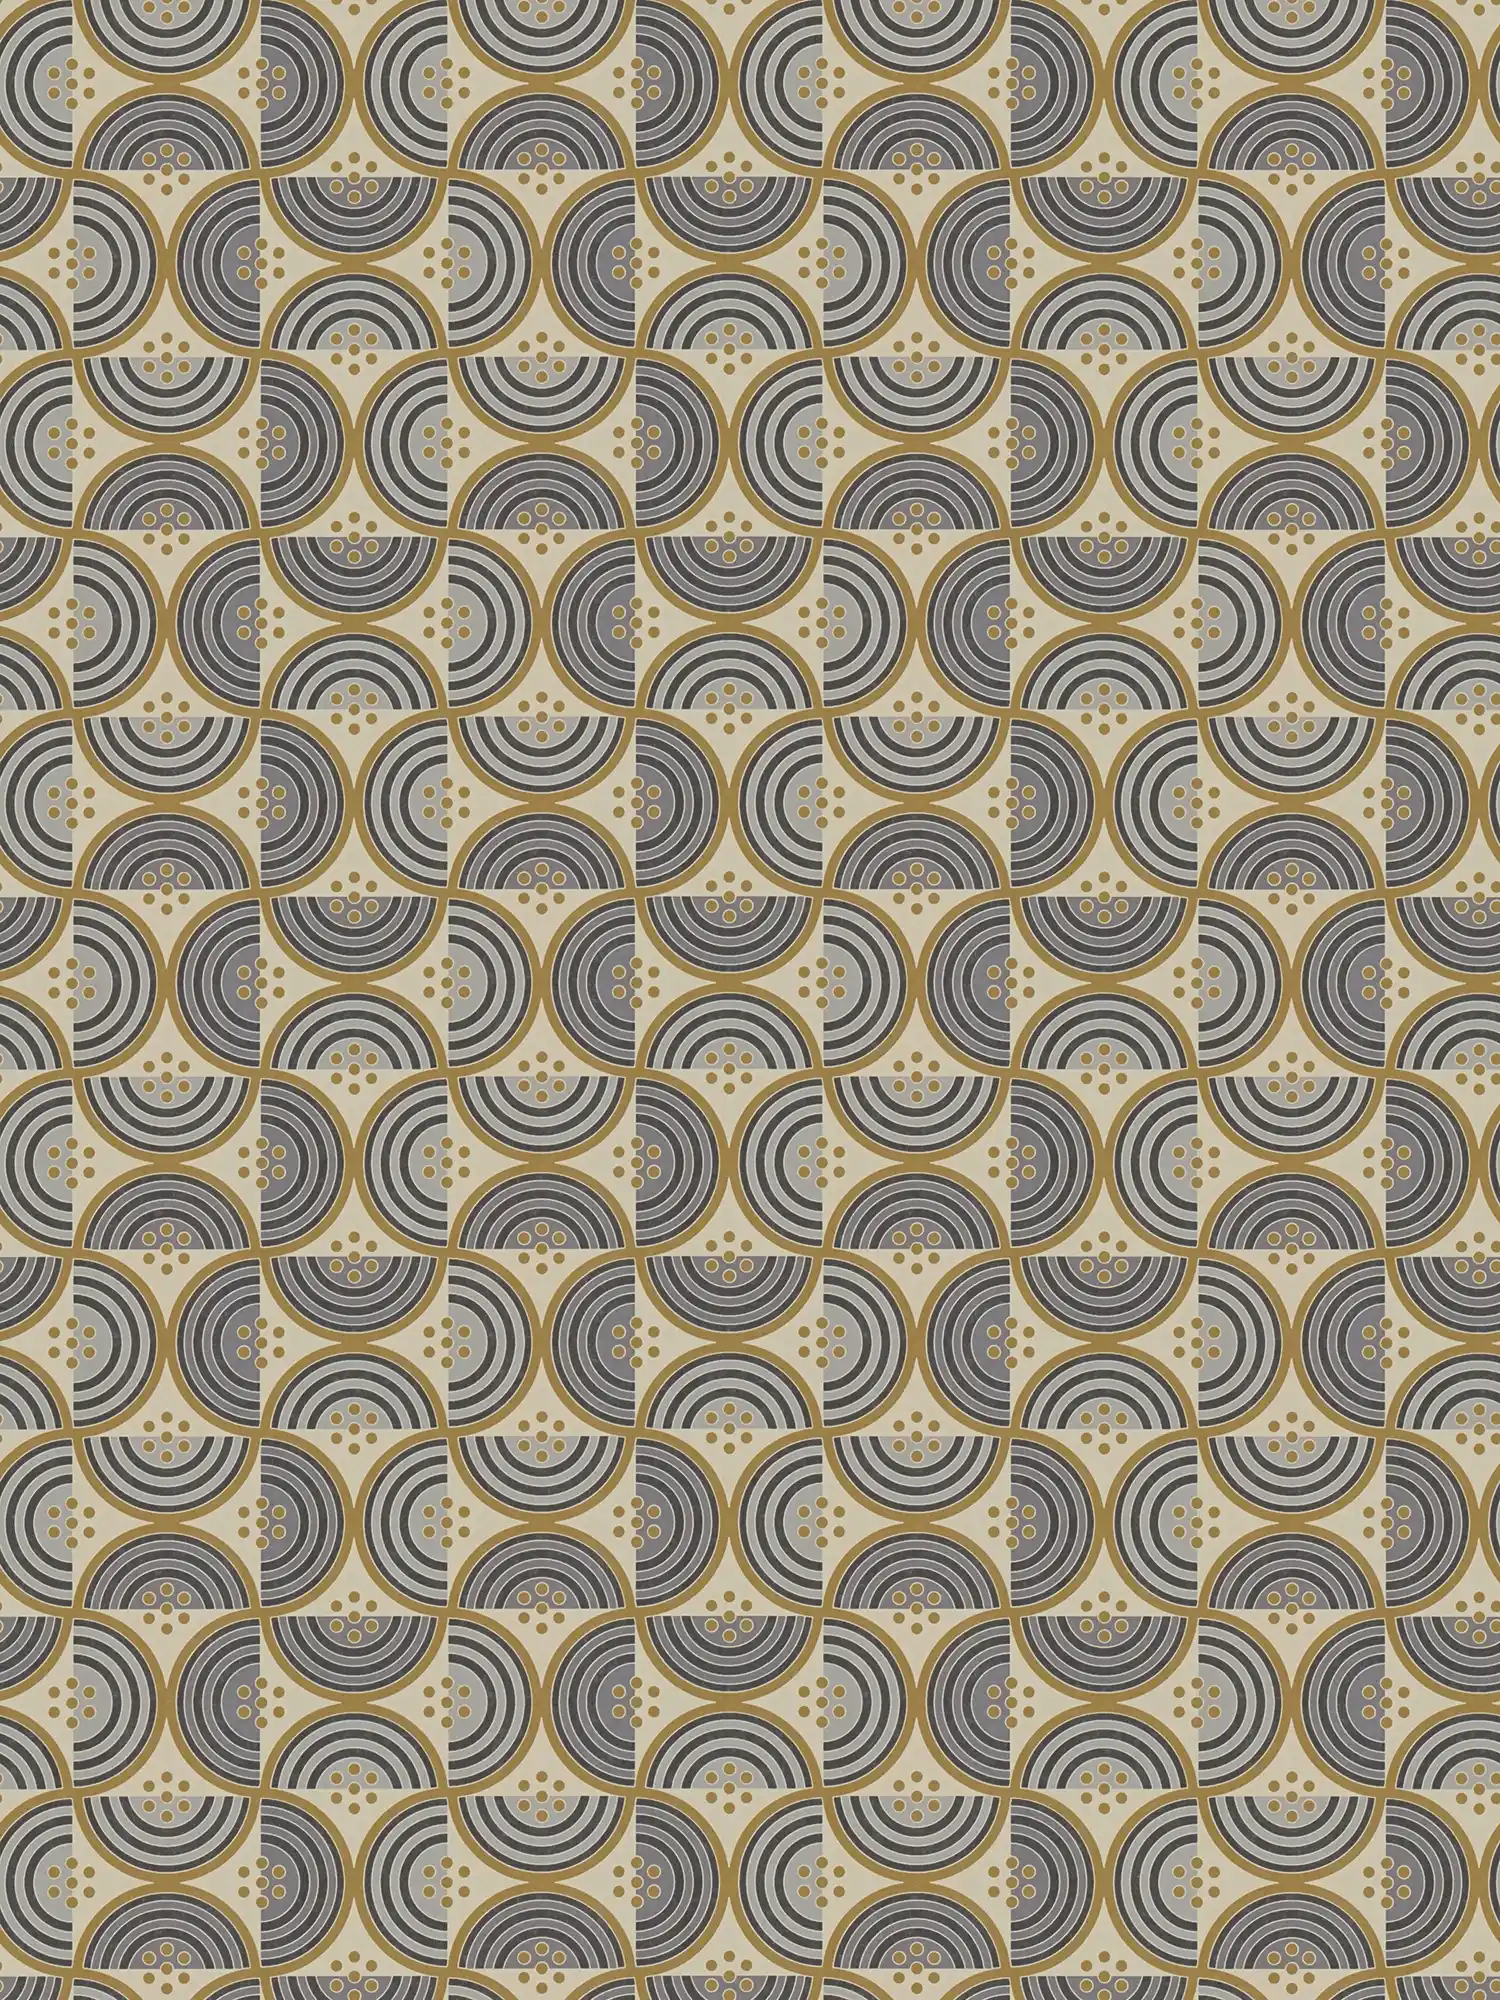 Vliesbehang met vierkant patroon van halve cirkels en stippen - geel, grijs, zwart
